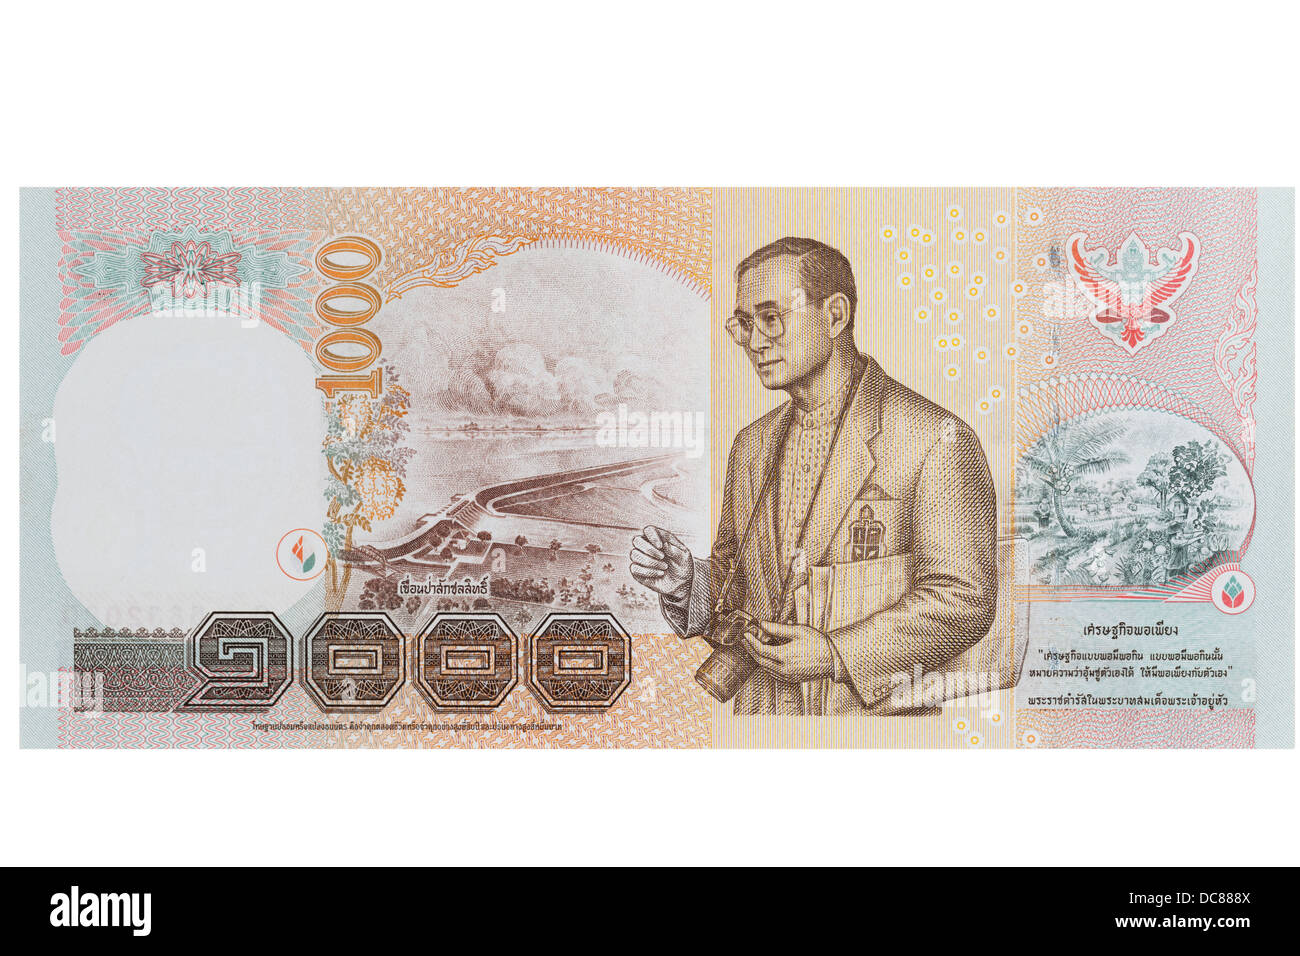 2500 батов в рублях. Купюра Тайланда 1000. 1000 Бат купюра. 1000 Бат Тайланд. Таиландская банкнота с фотоаппаратом.